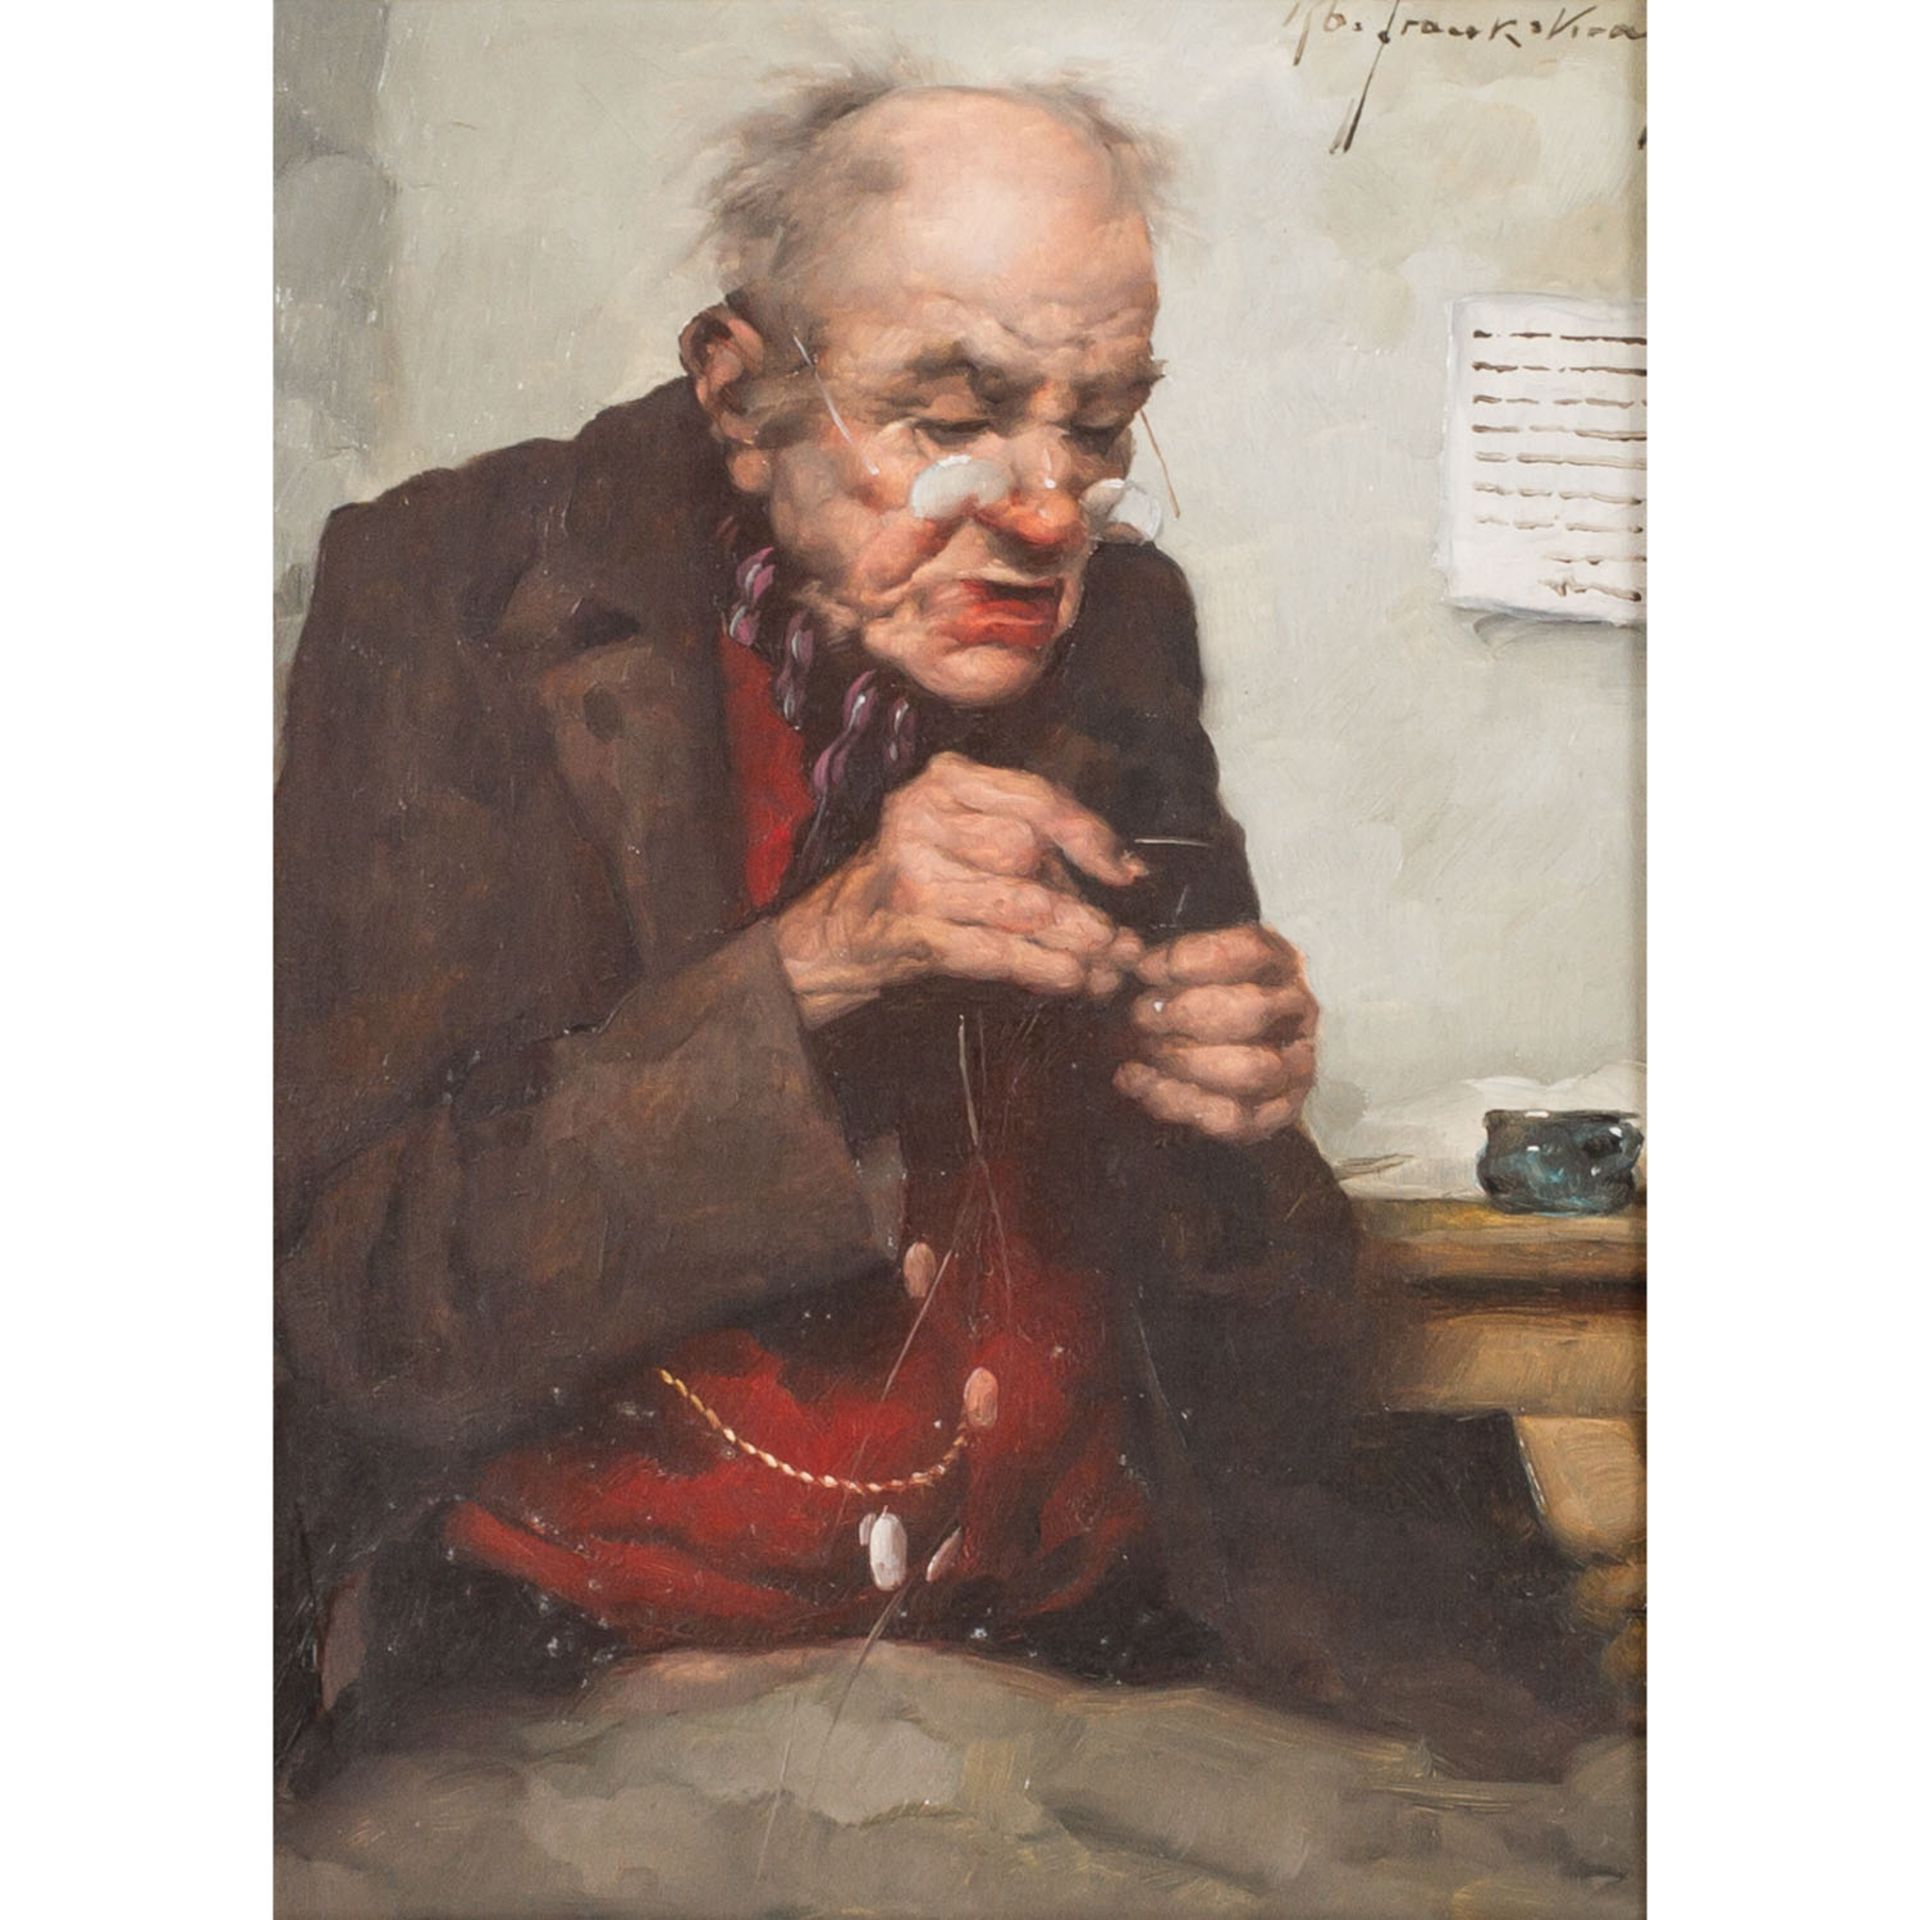 FRANK-KRAUSS, ROBERT (1893-1950) "Alter Schneider beim Einfädeln des Fadens"